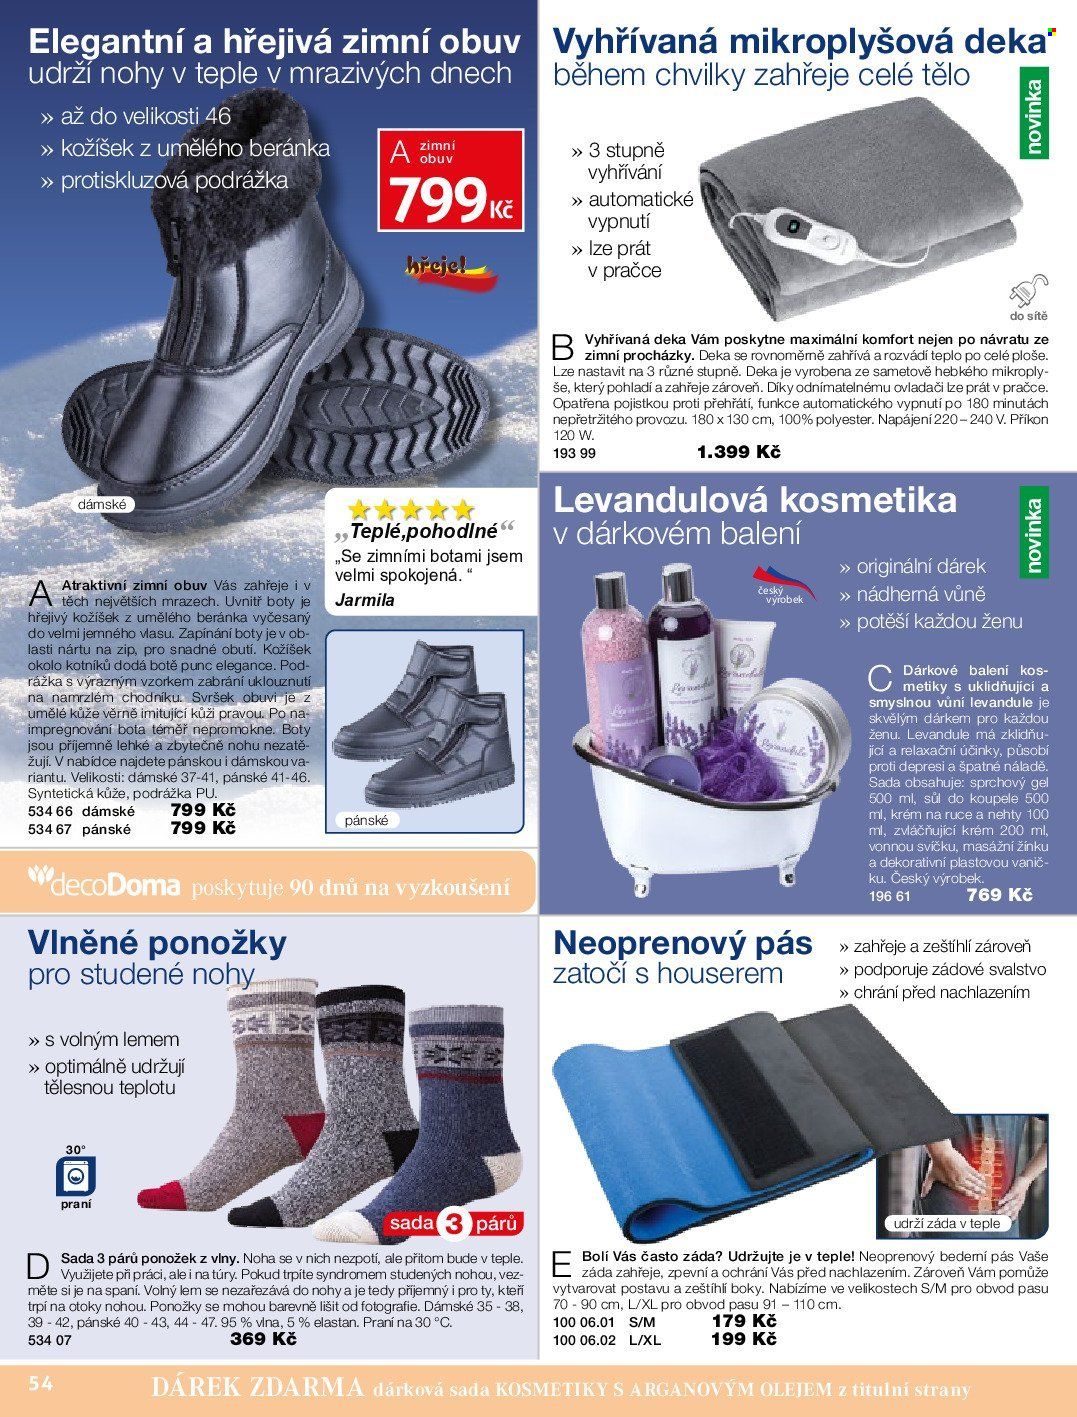 thumbnail - Leták decoDoma - Produkty v akci - dárková sada, krém, koš, mikroplyšová deka, bederní pás, krém na ruce, zimní obuv, boty, ponožky. Strana 54.